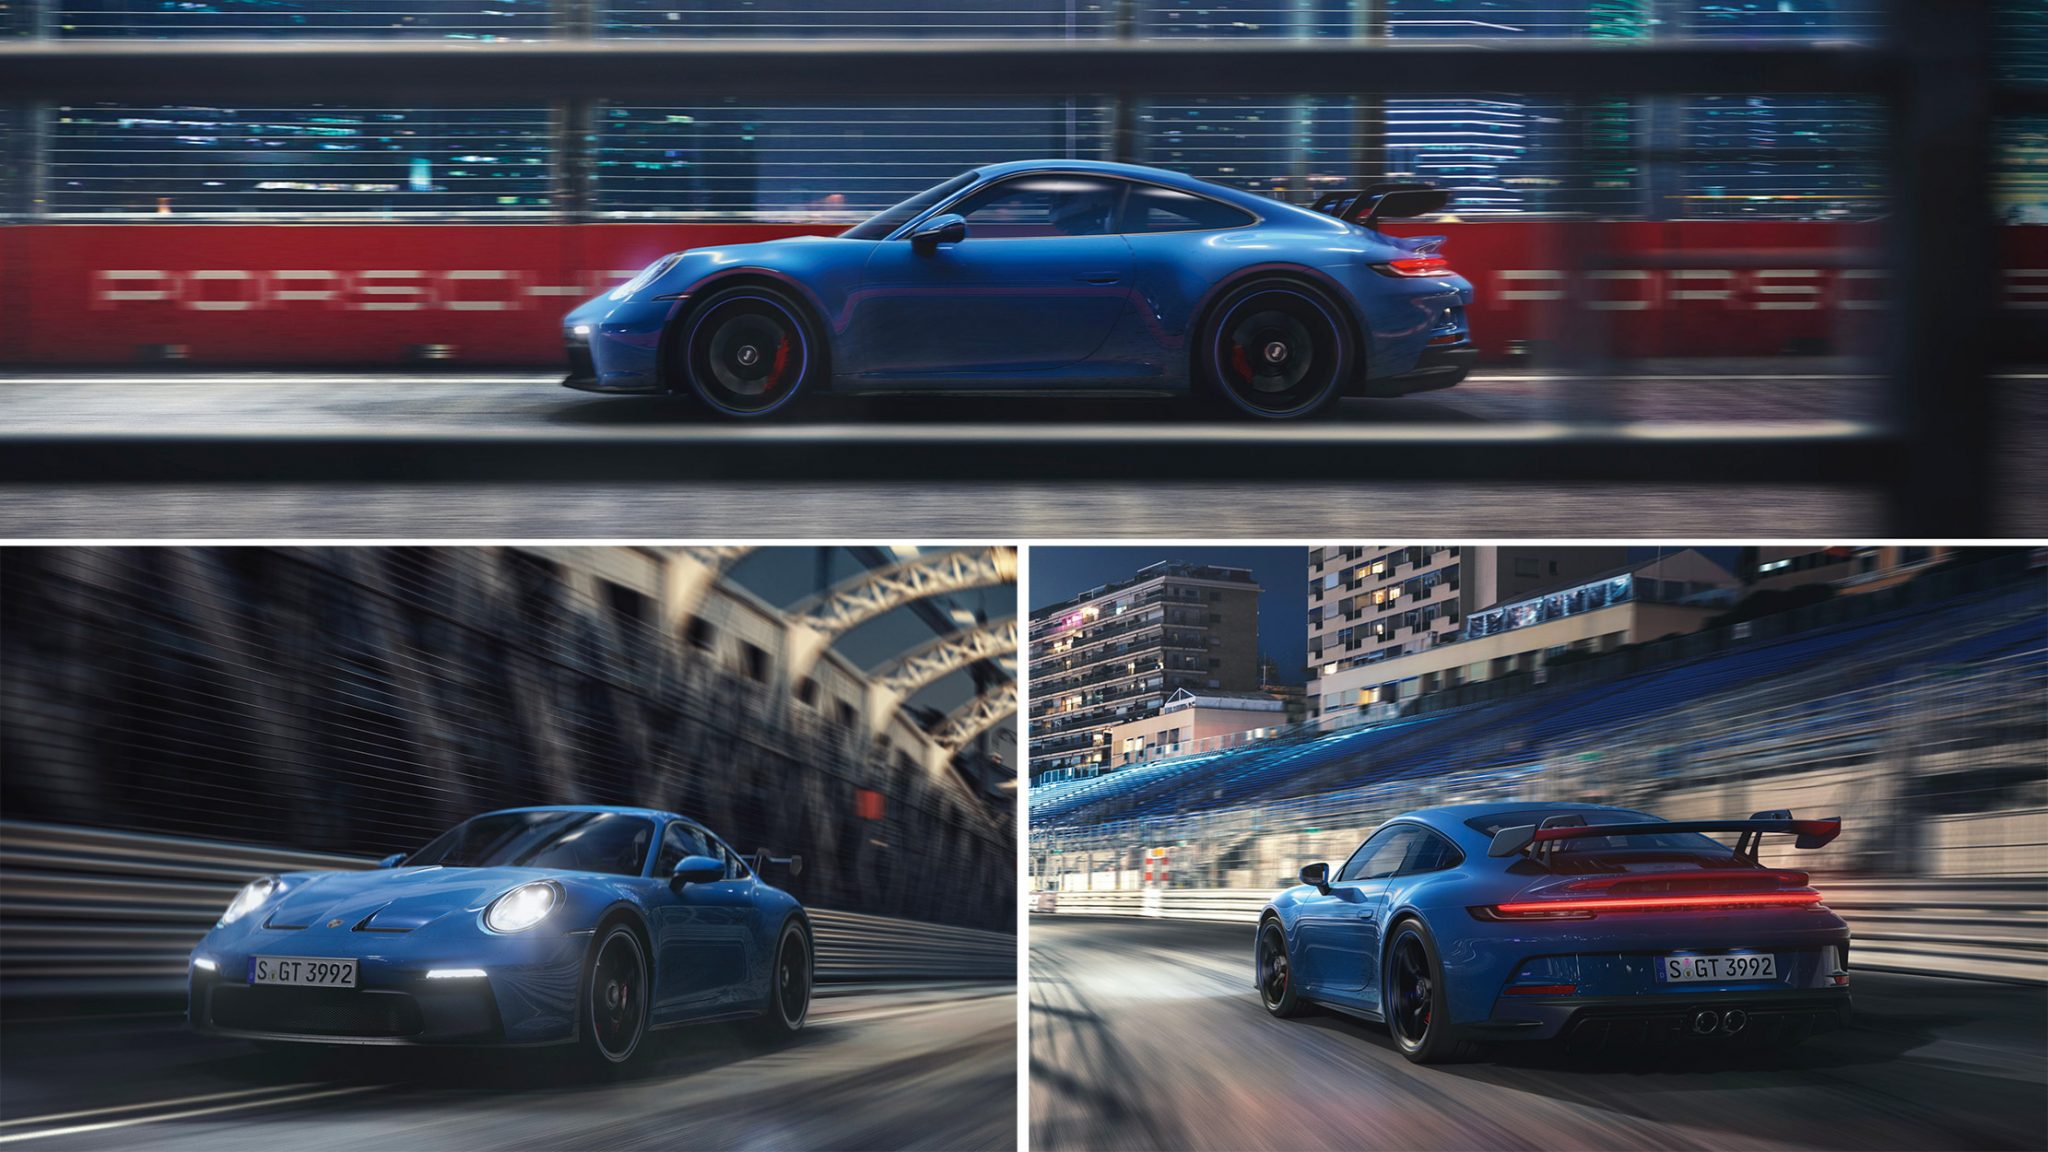 Porsche-911-GT3-2021-992-car-supercar-blue